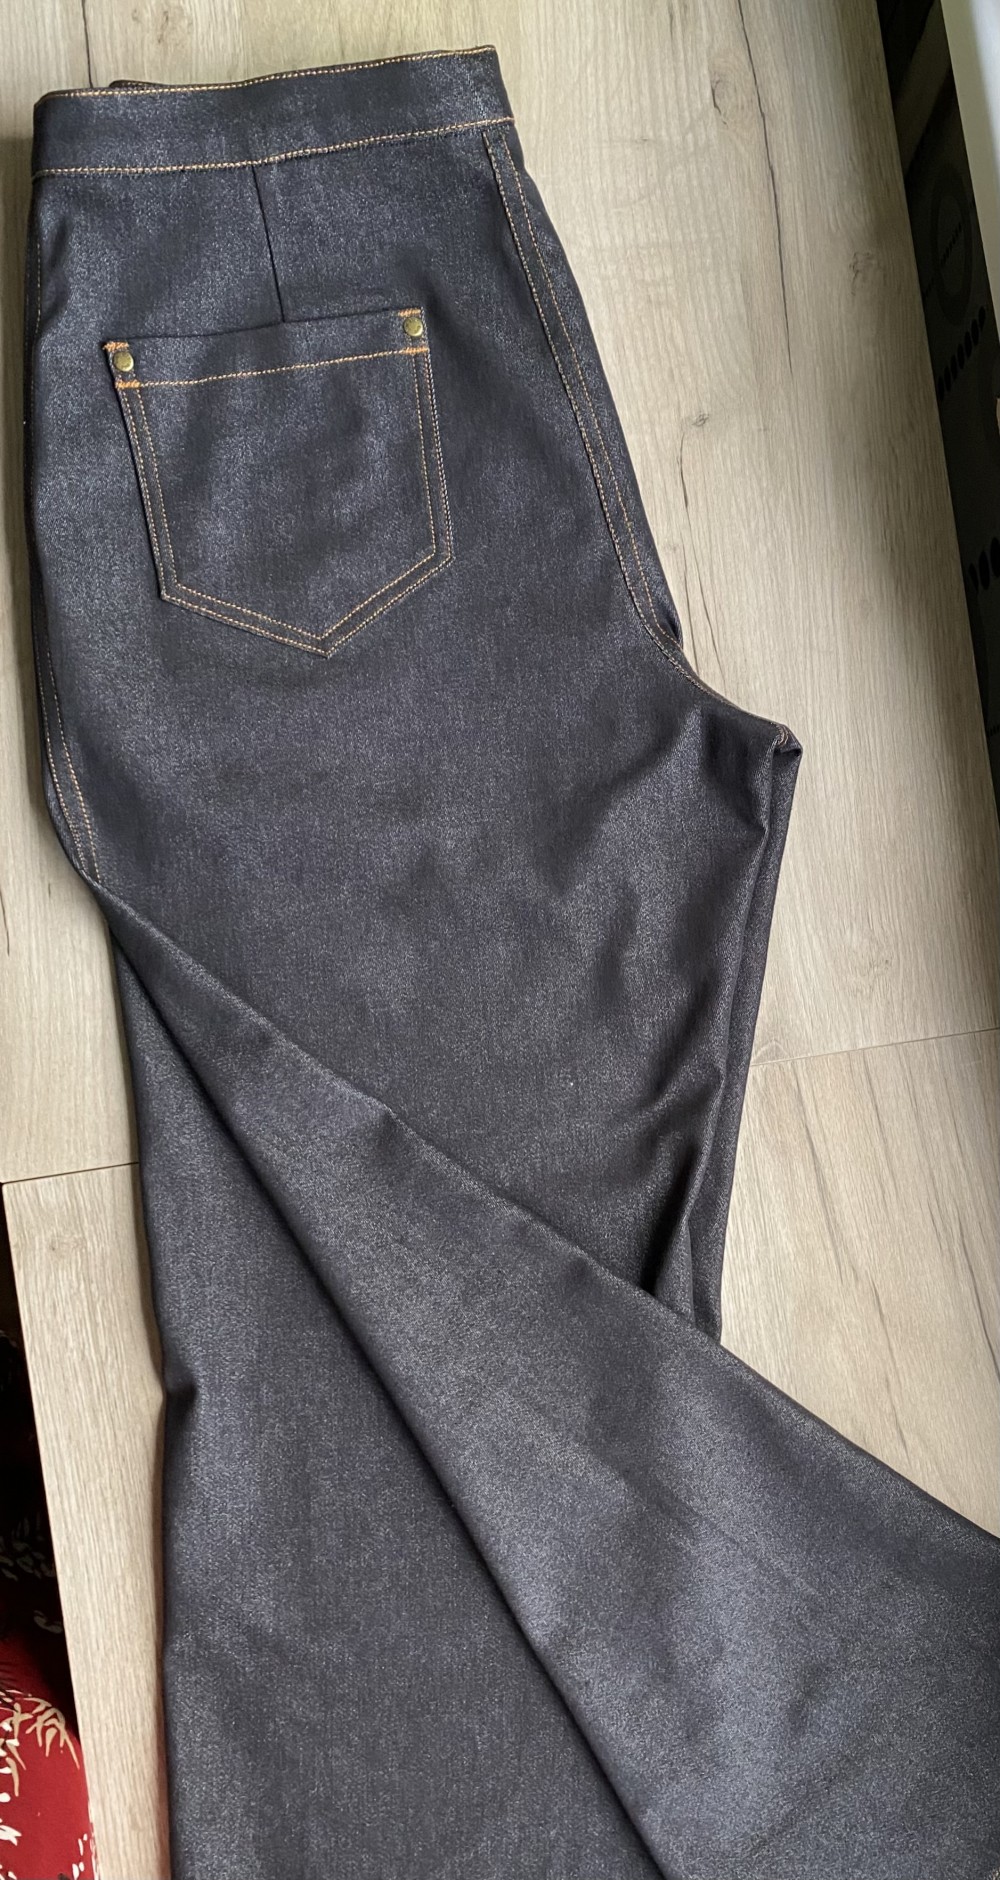 Джинсы по выкройке брюк из городской коллекции «Инга» фото